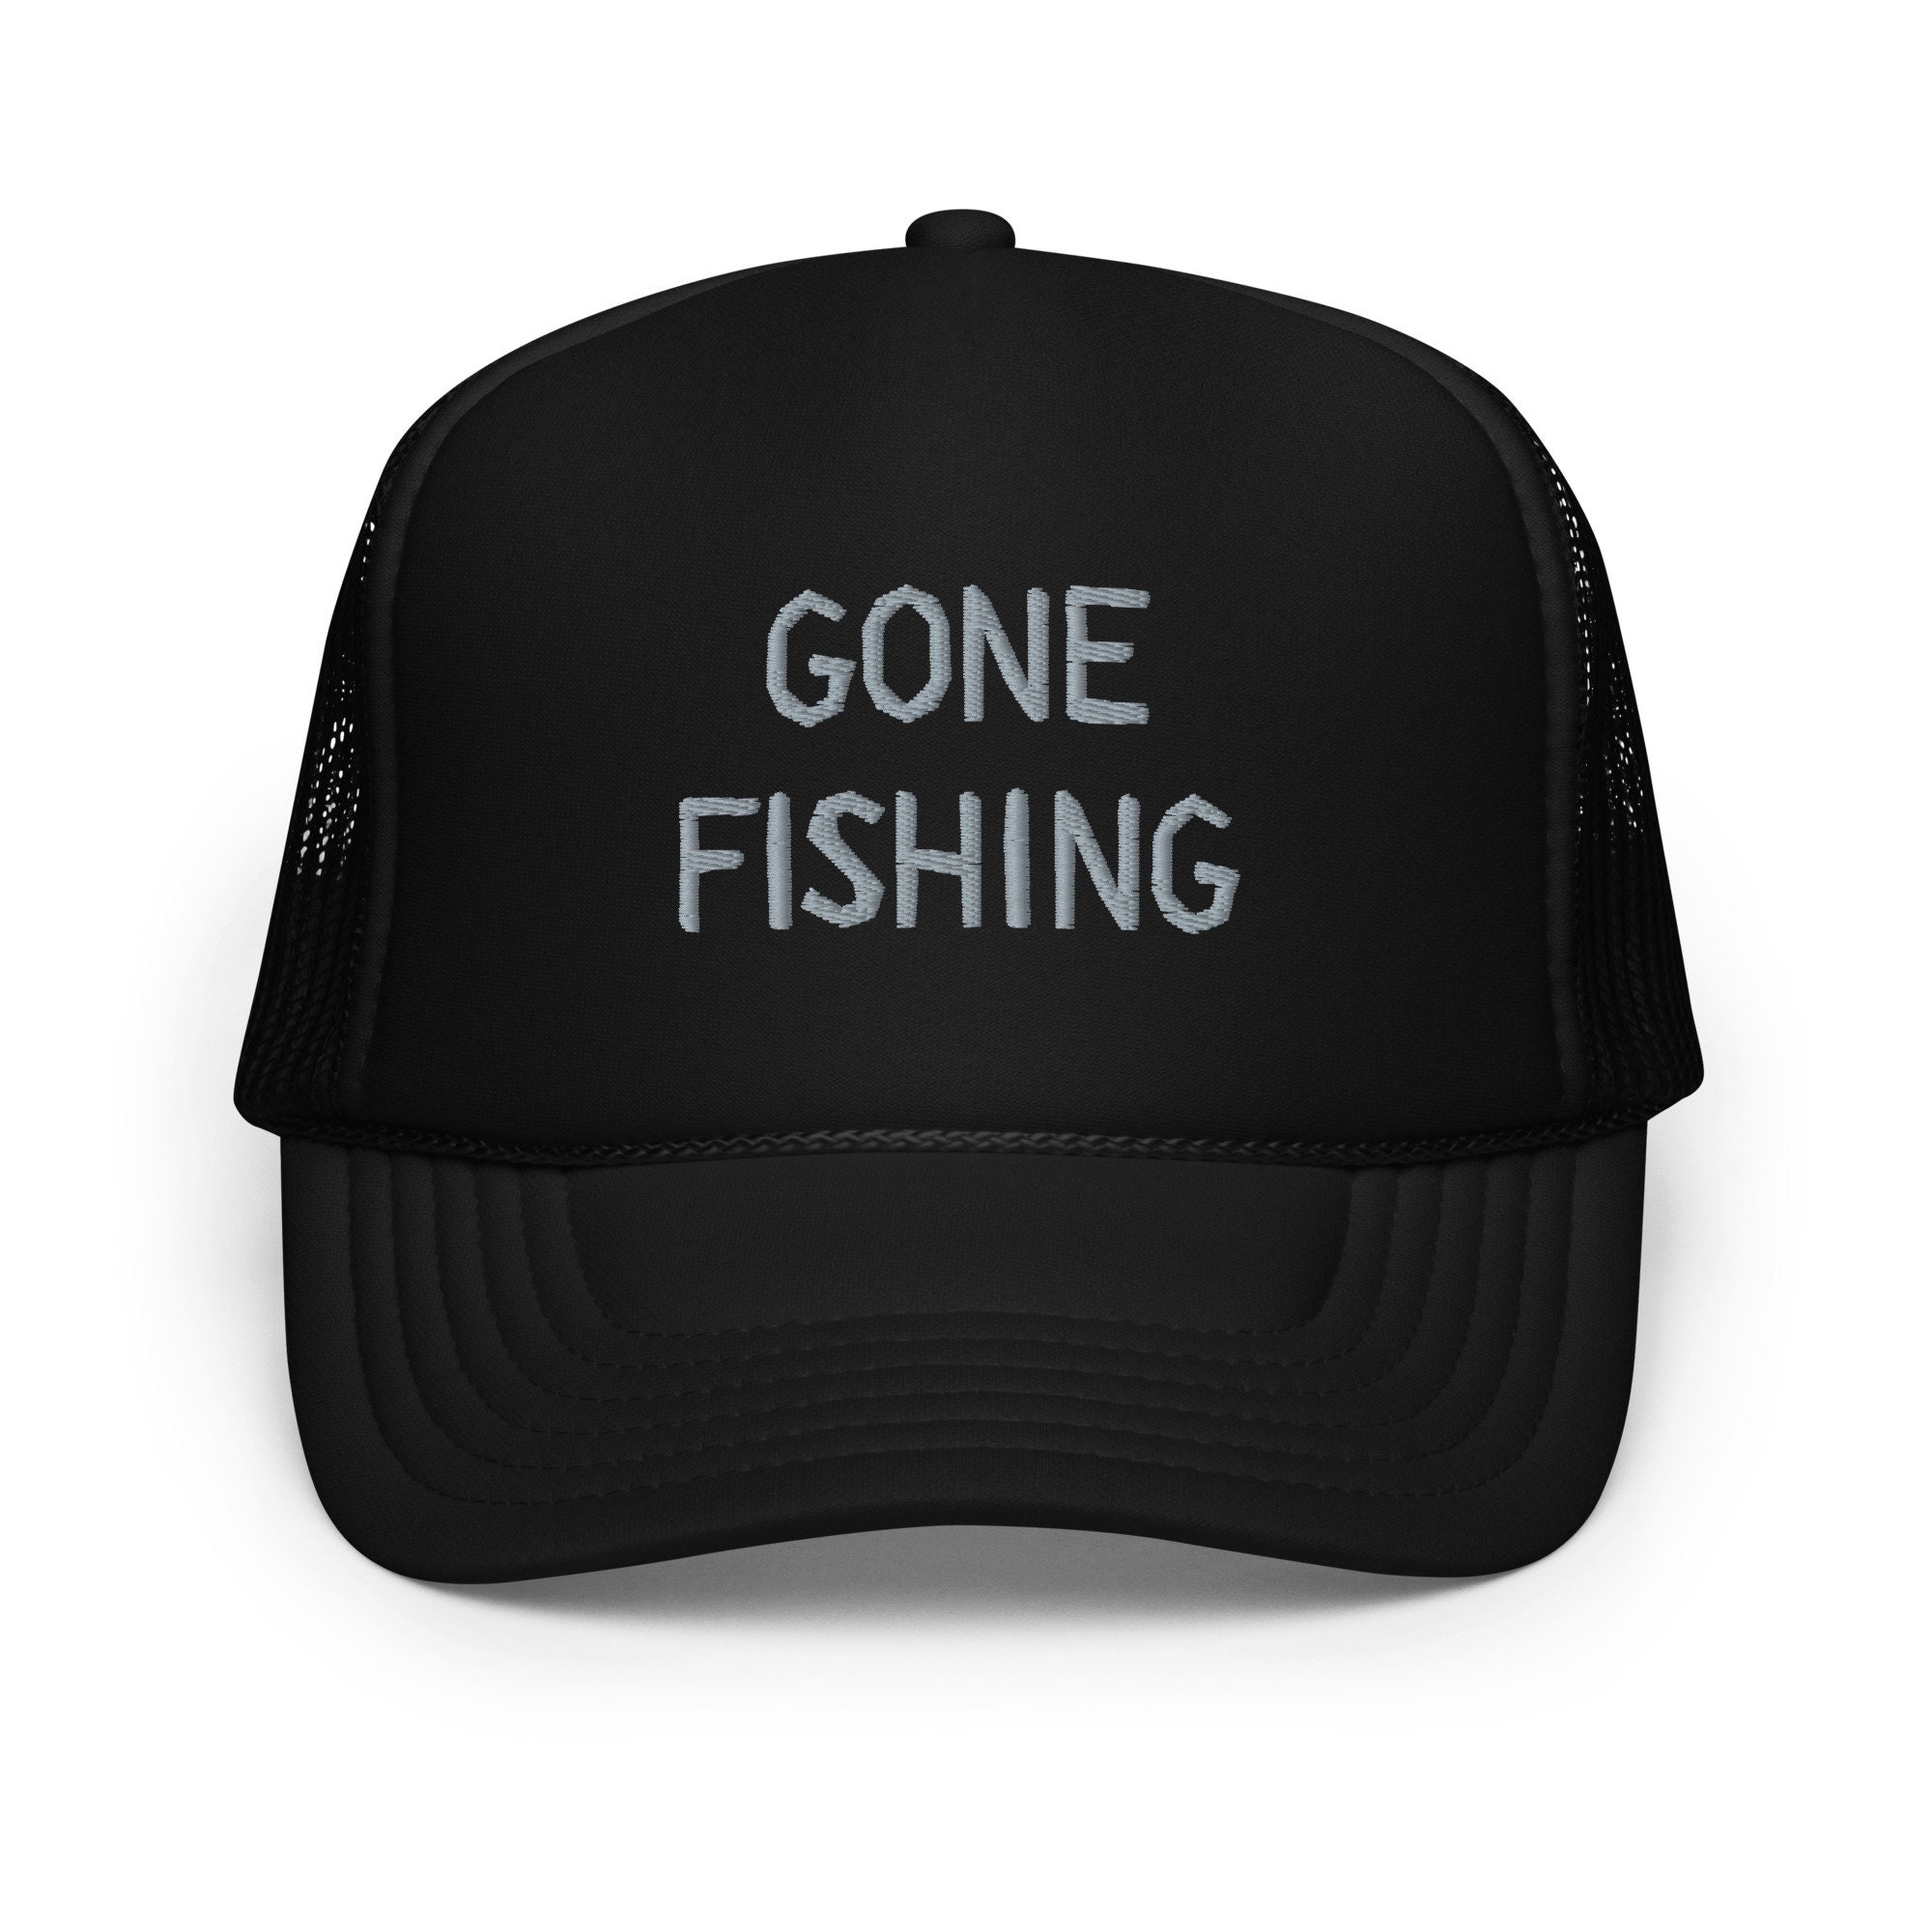 Big Bass Fishing Cap 